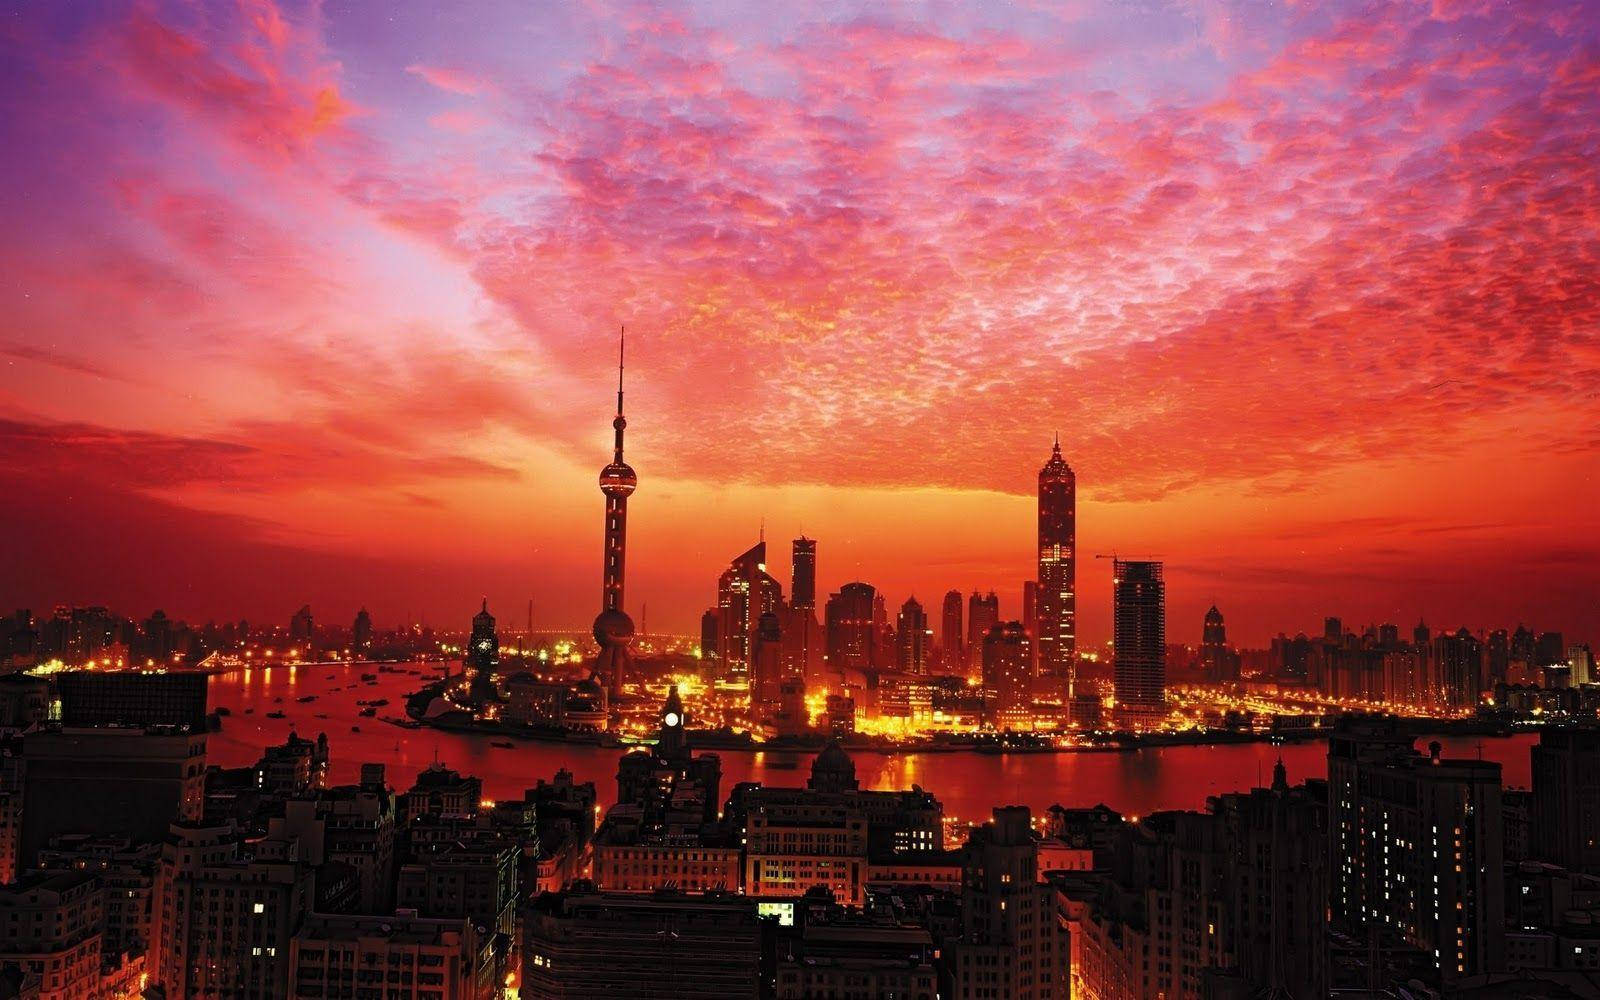 Random Shanghai City Skyline Sunset Wallpaper